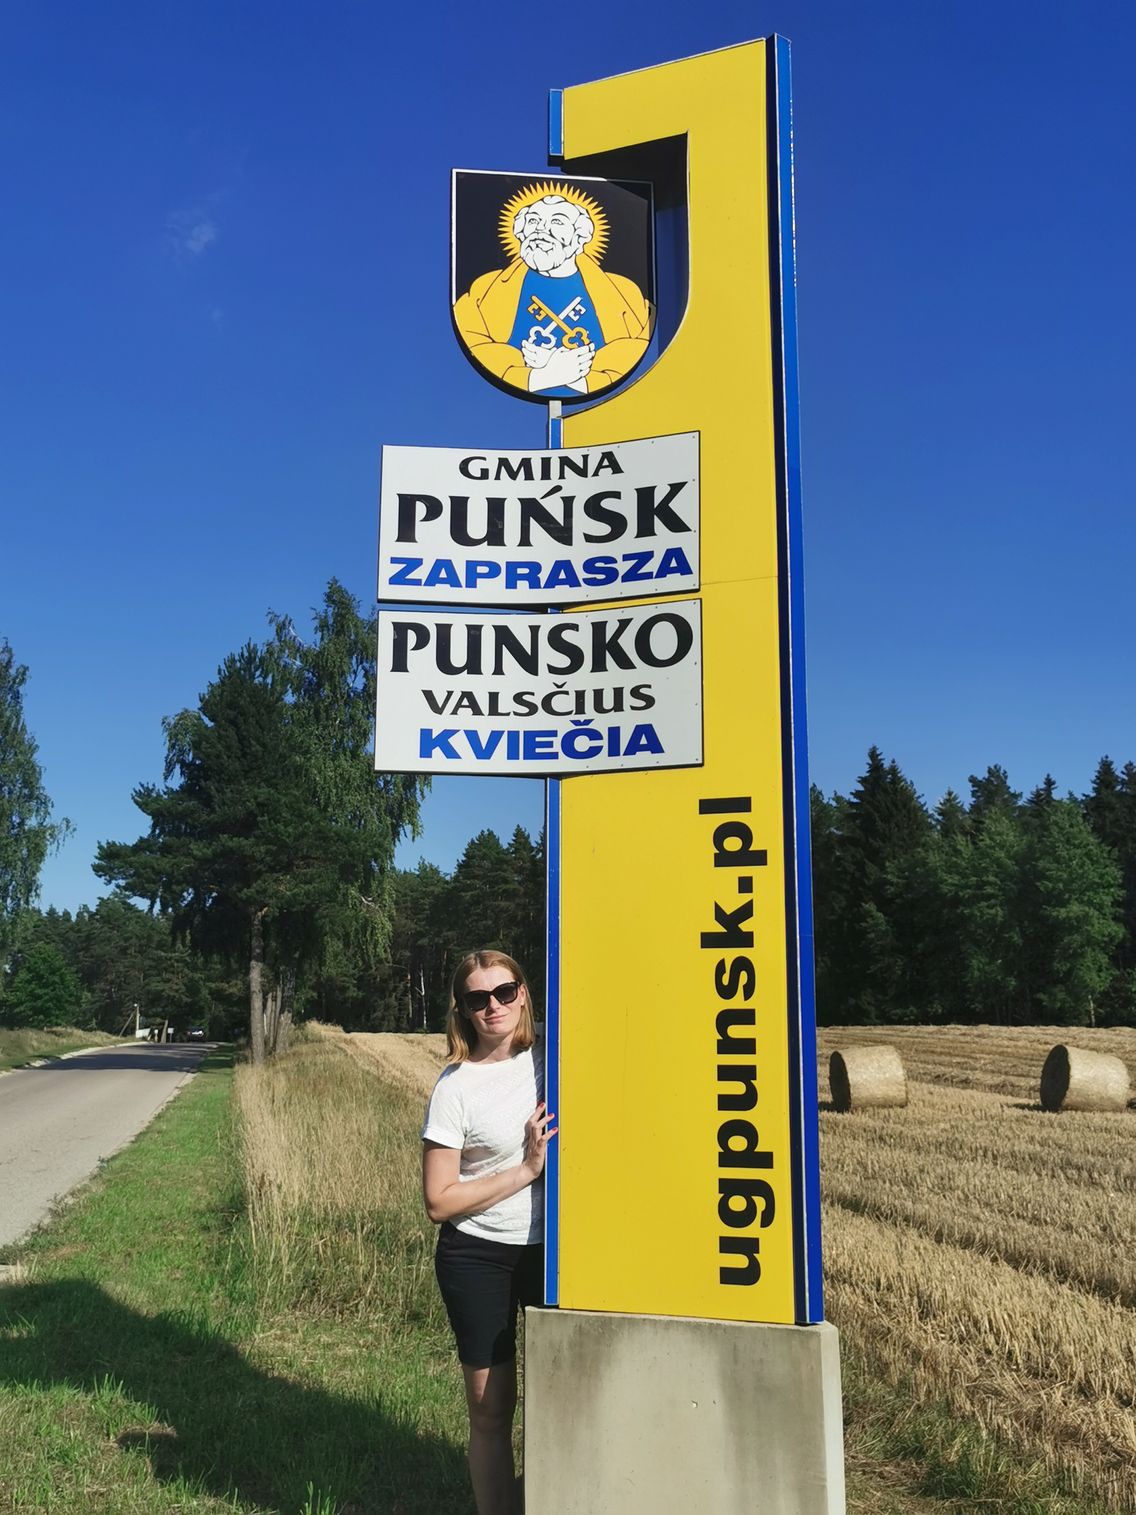 W gminie Puńsk obowiązują dwujęzyczne tablice